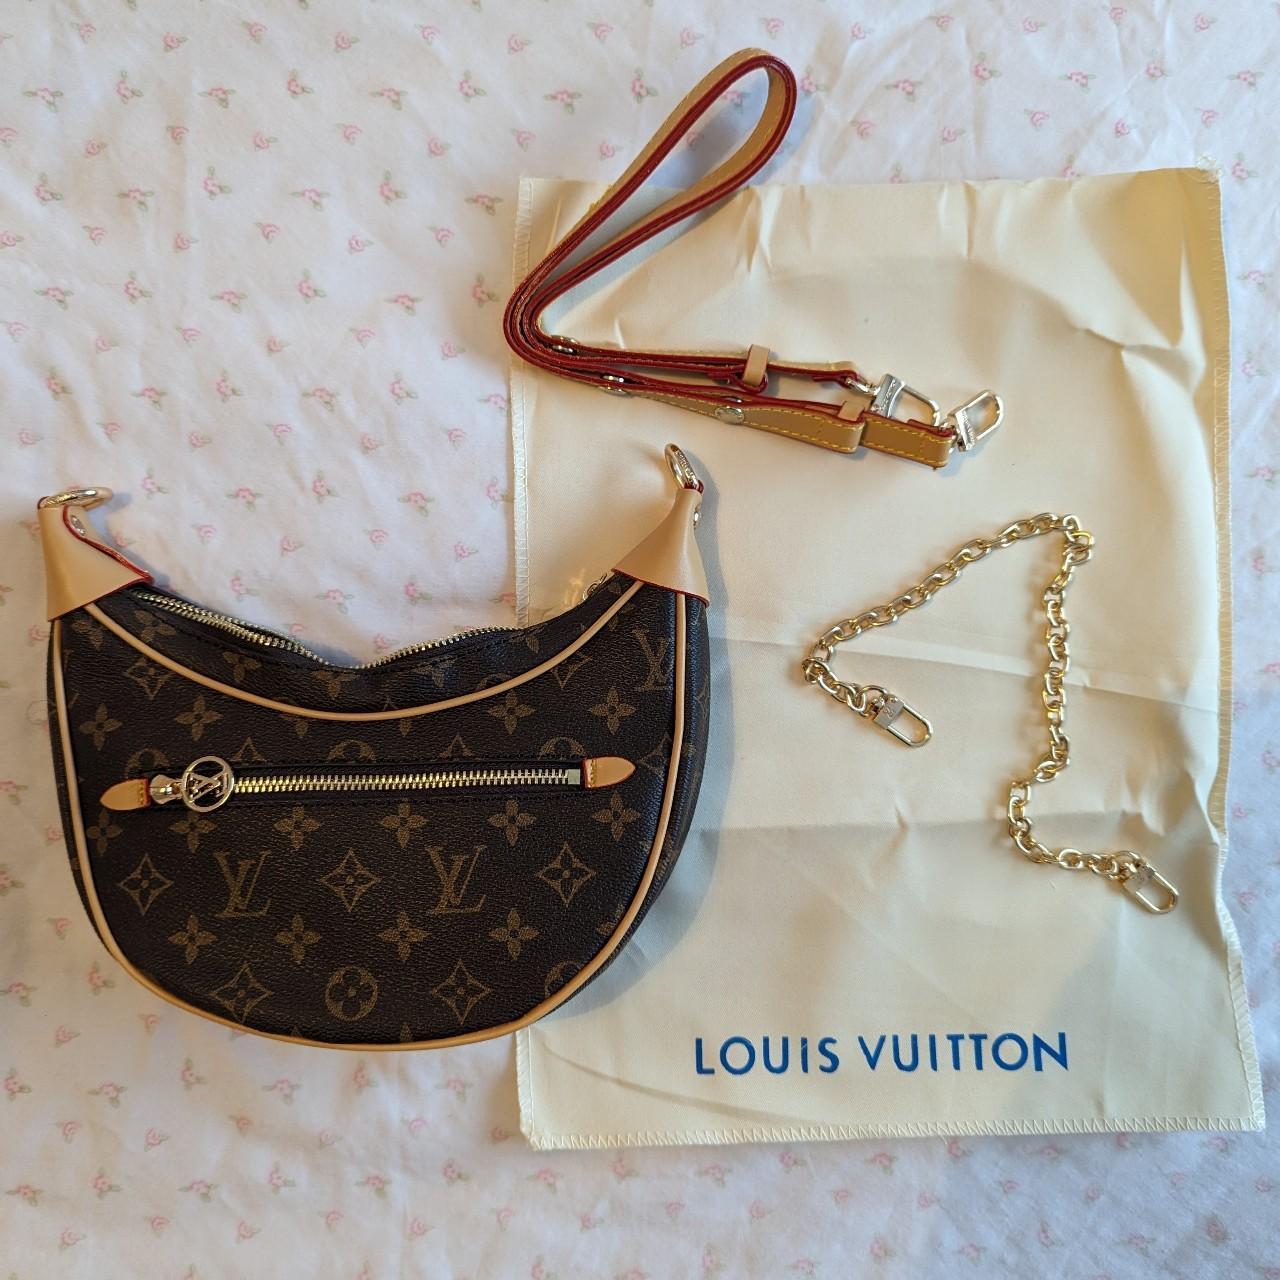 Authentic Louis Vuitton Inveneur Tote Bag, pre-owned - Depop